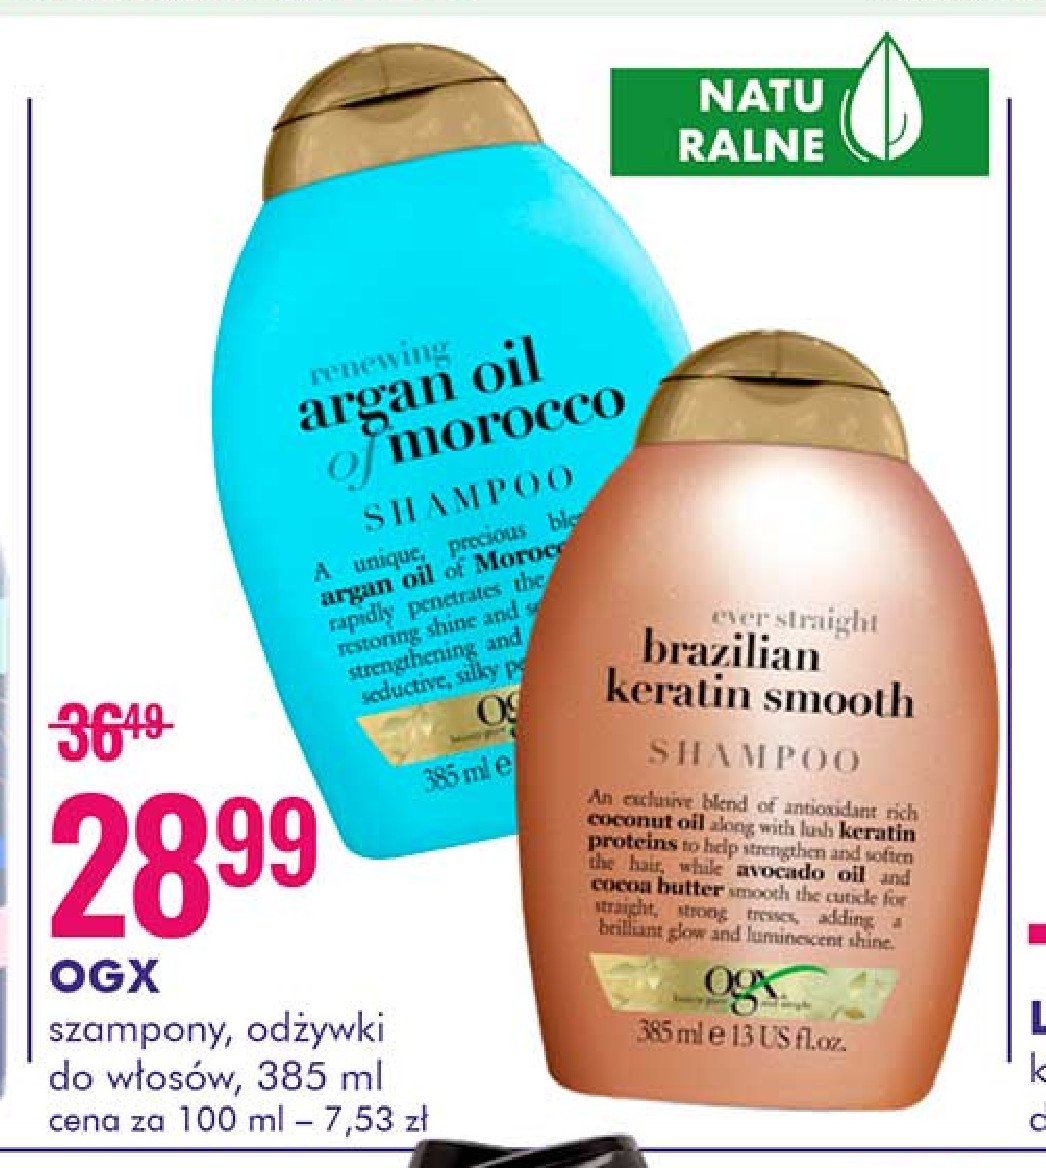 Odżywka do włosów Ogx renewing argan oil of marocco promocja